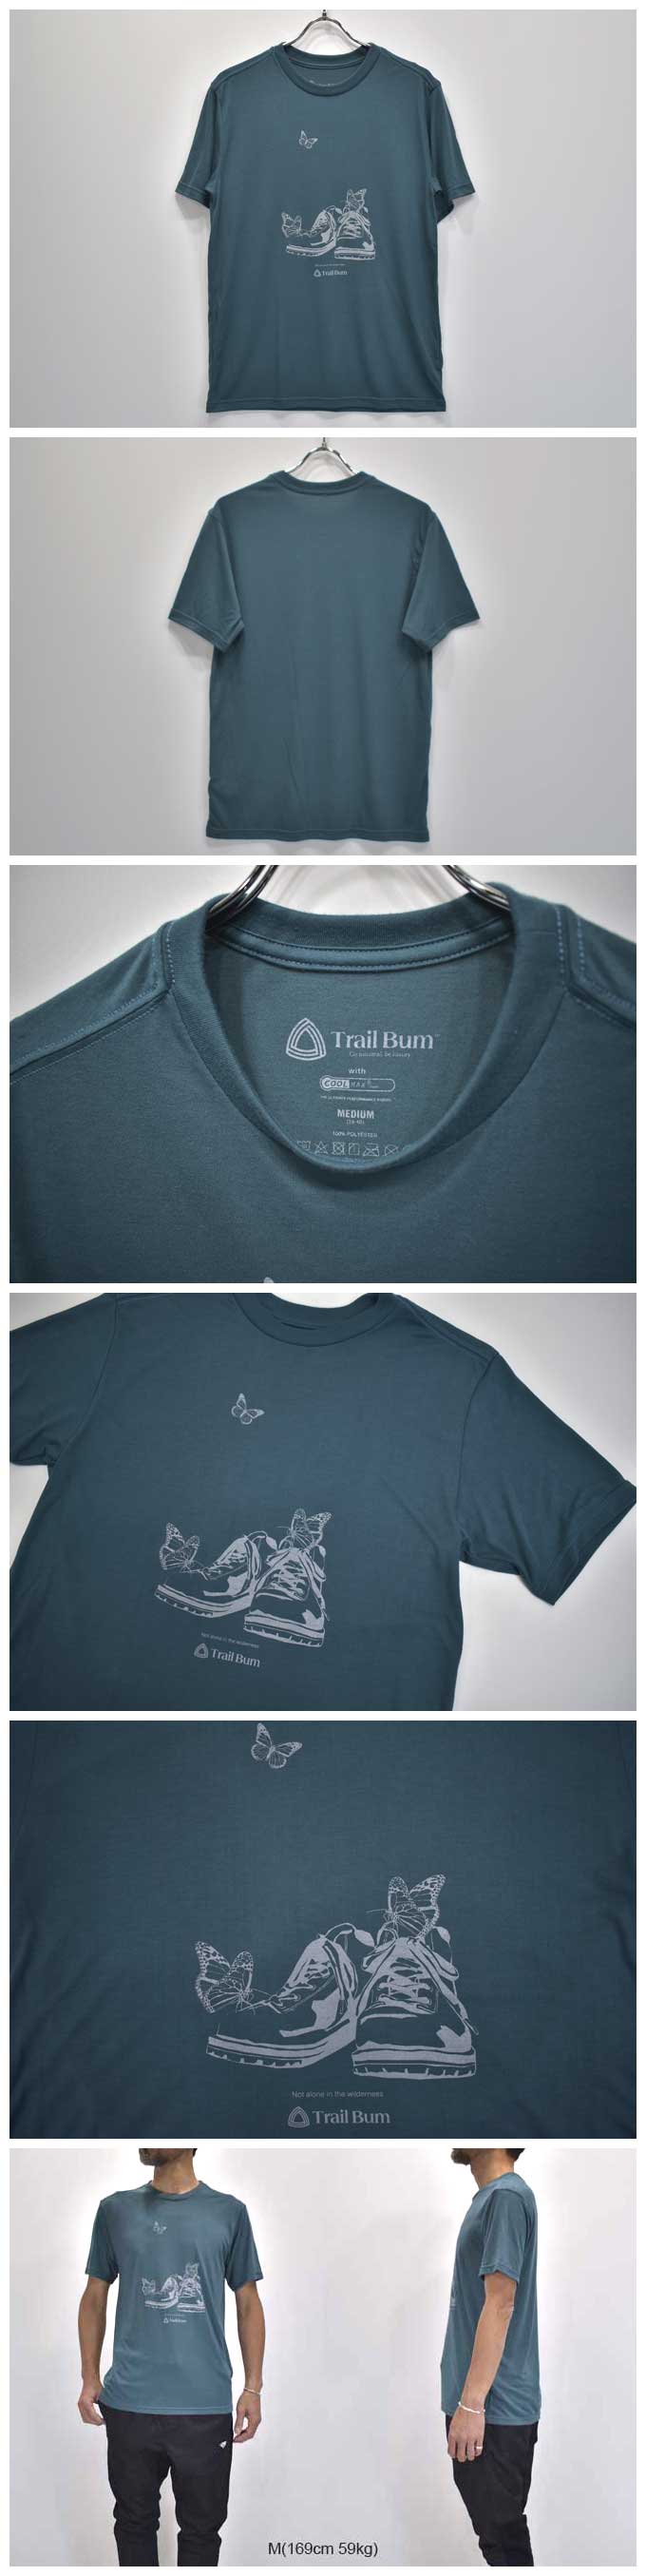 Trail Bum Cool Max Print T-Shirt(Monarch)